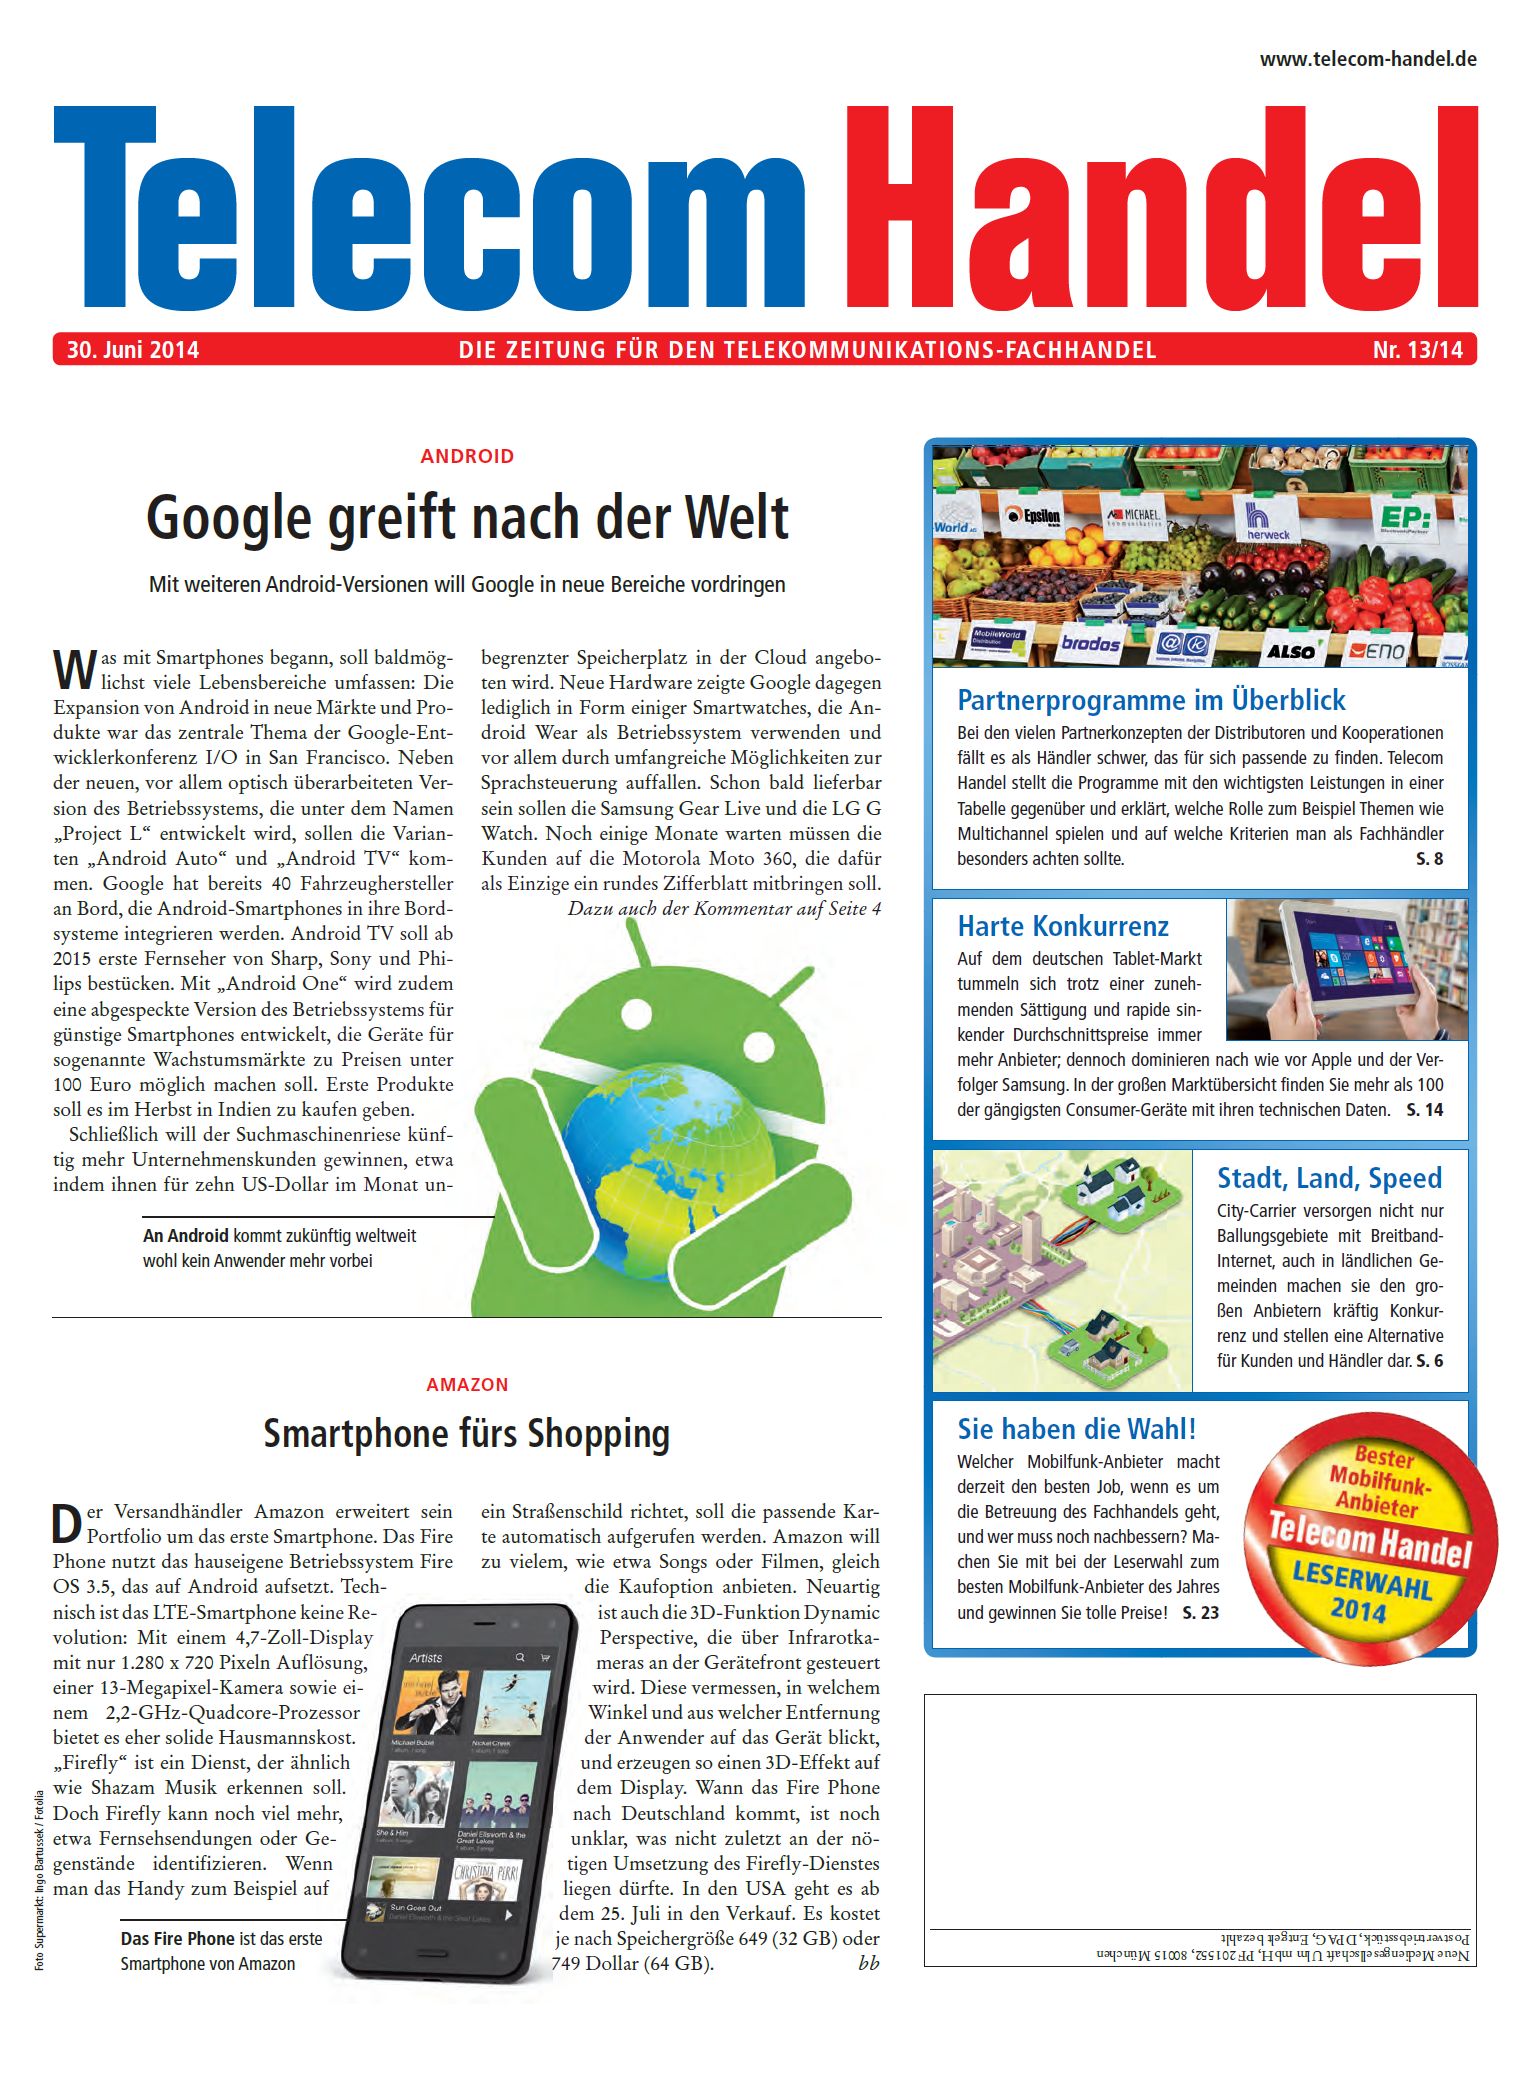 Telecom Handel Ausgabe 13/2014